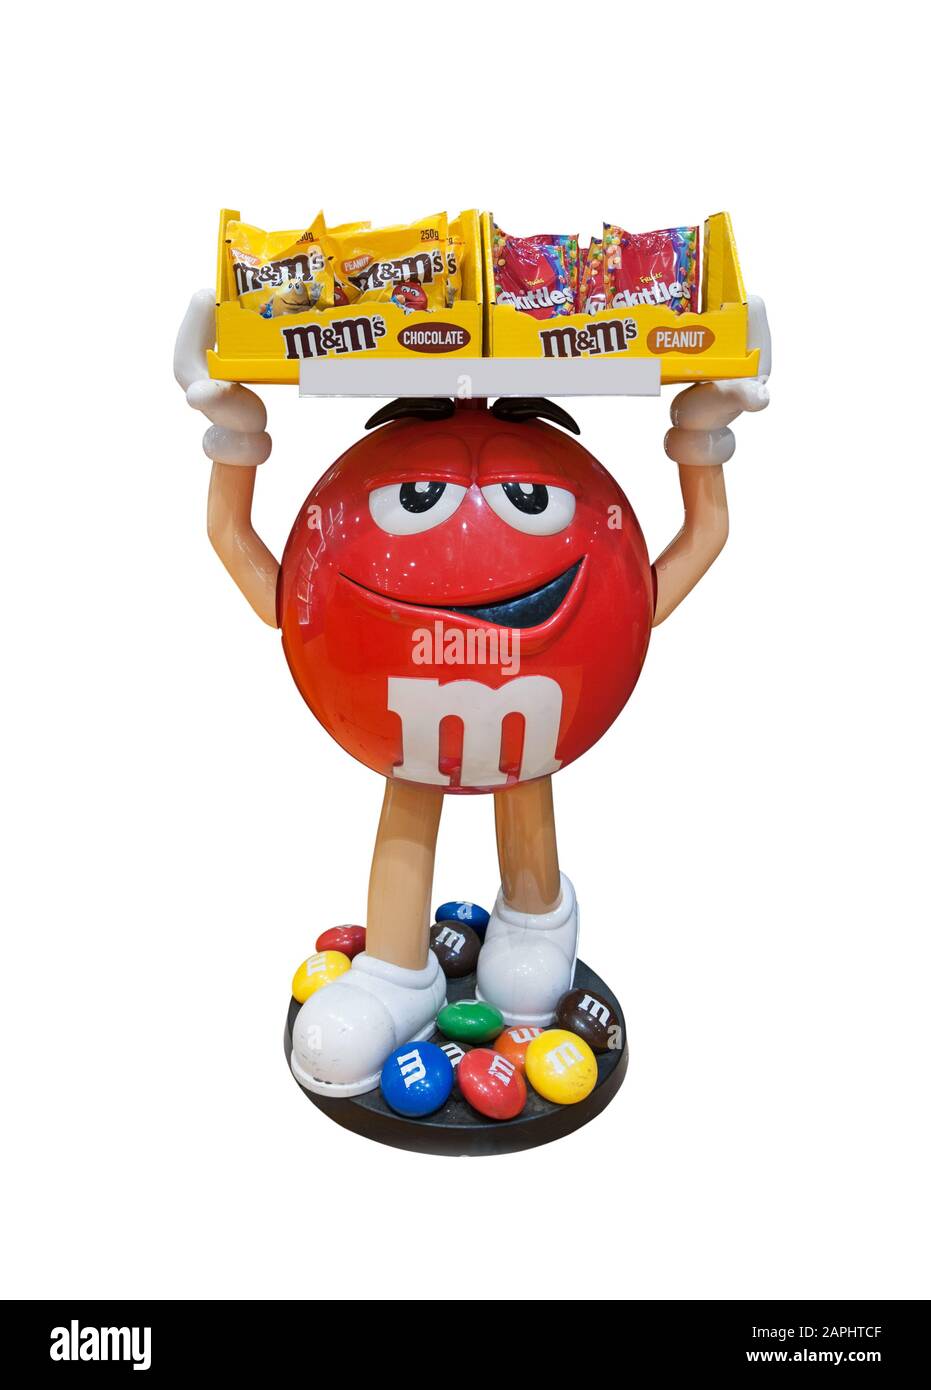 Florenz, Italien - 2020, 19. Januar: Roter M&M-Charakter hält einen Süßigkeiten-Container auf dem Kopf. Weißer Hintergrund. Beschneidungspfad. Stockfoto